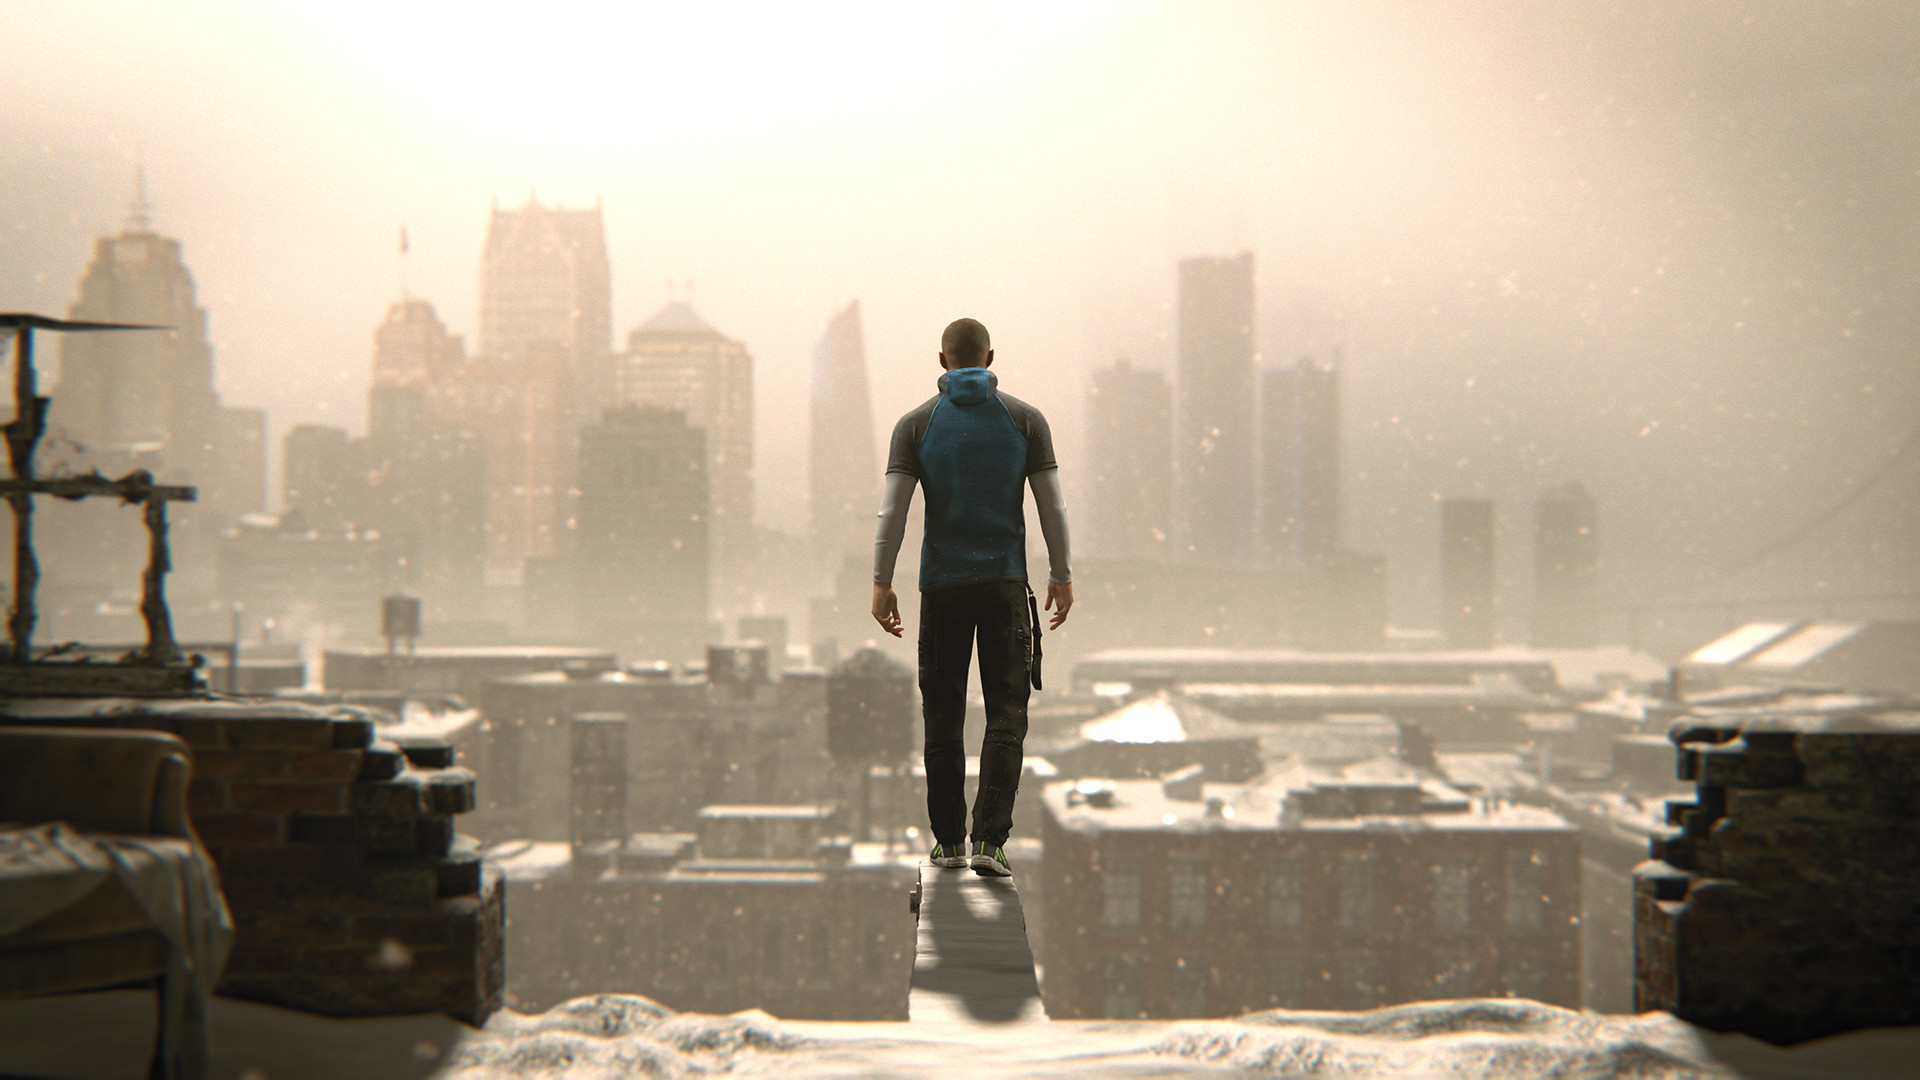 Quando Detroit: Become Human será lançado na Steam?